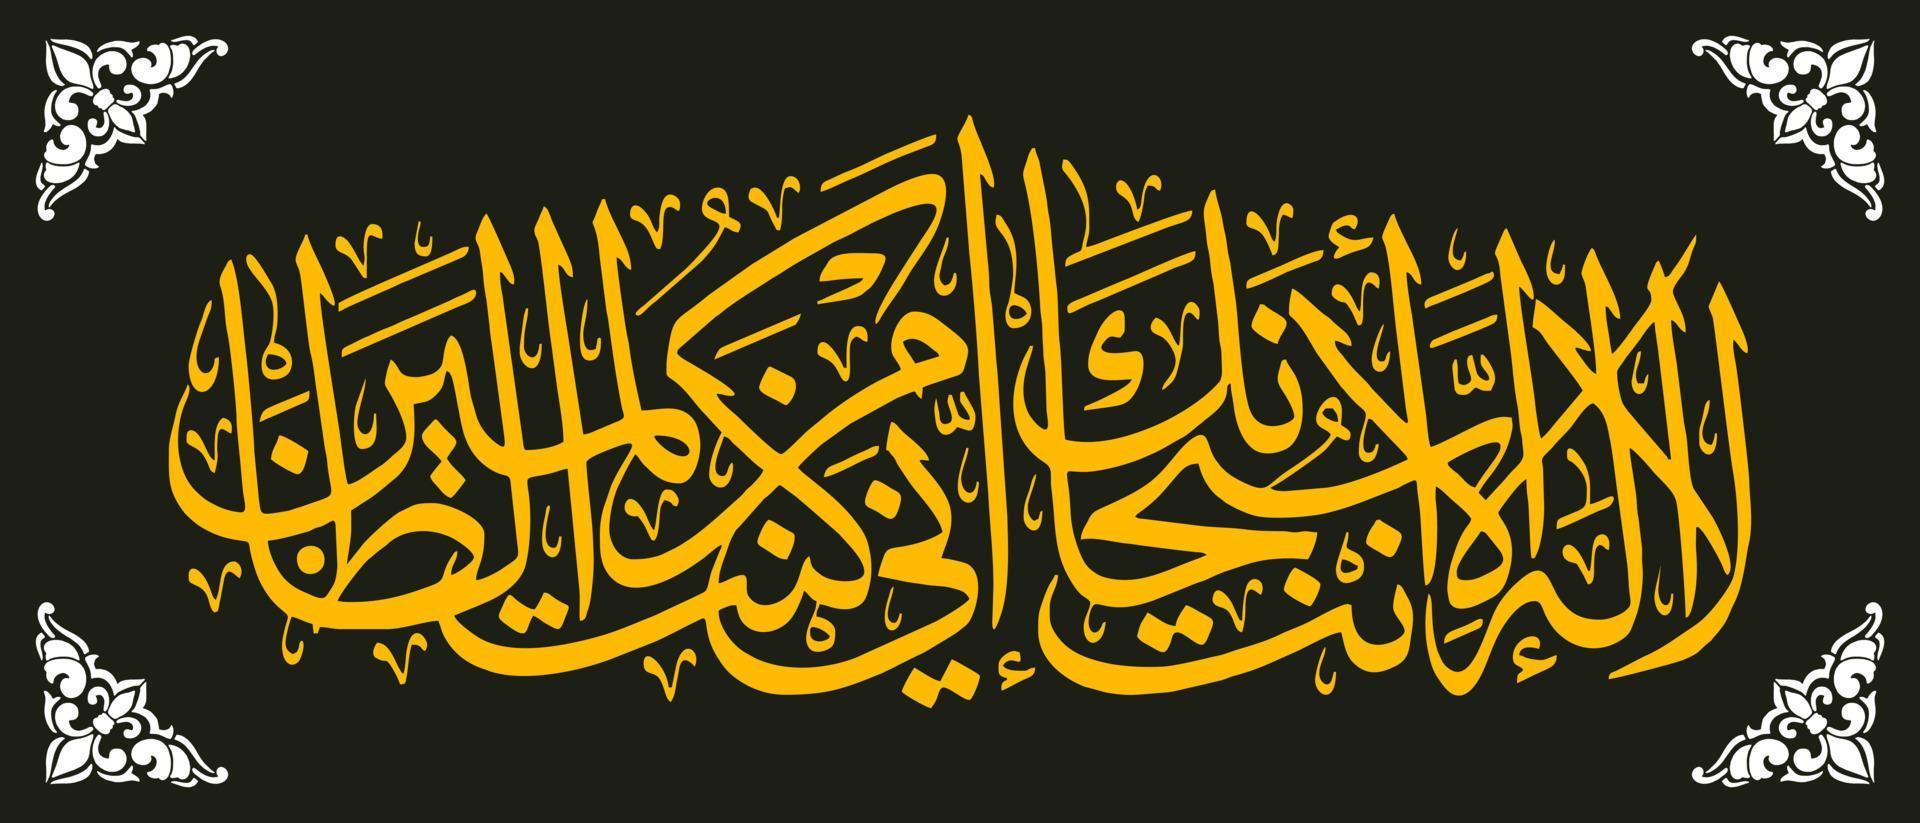 caligrafia árabe, oração do profeta yunus, tradução não há deus além de você. glória a você, em verdade, eu sou um dos malfeitores. vetor